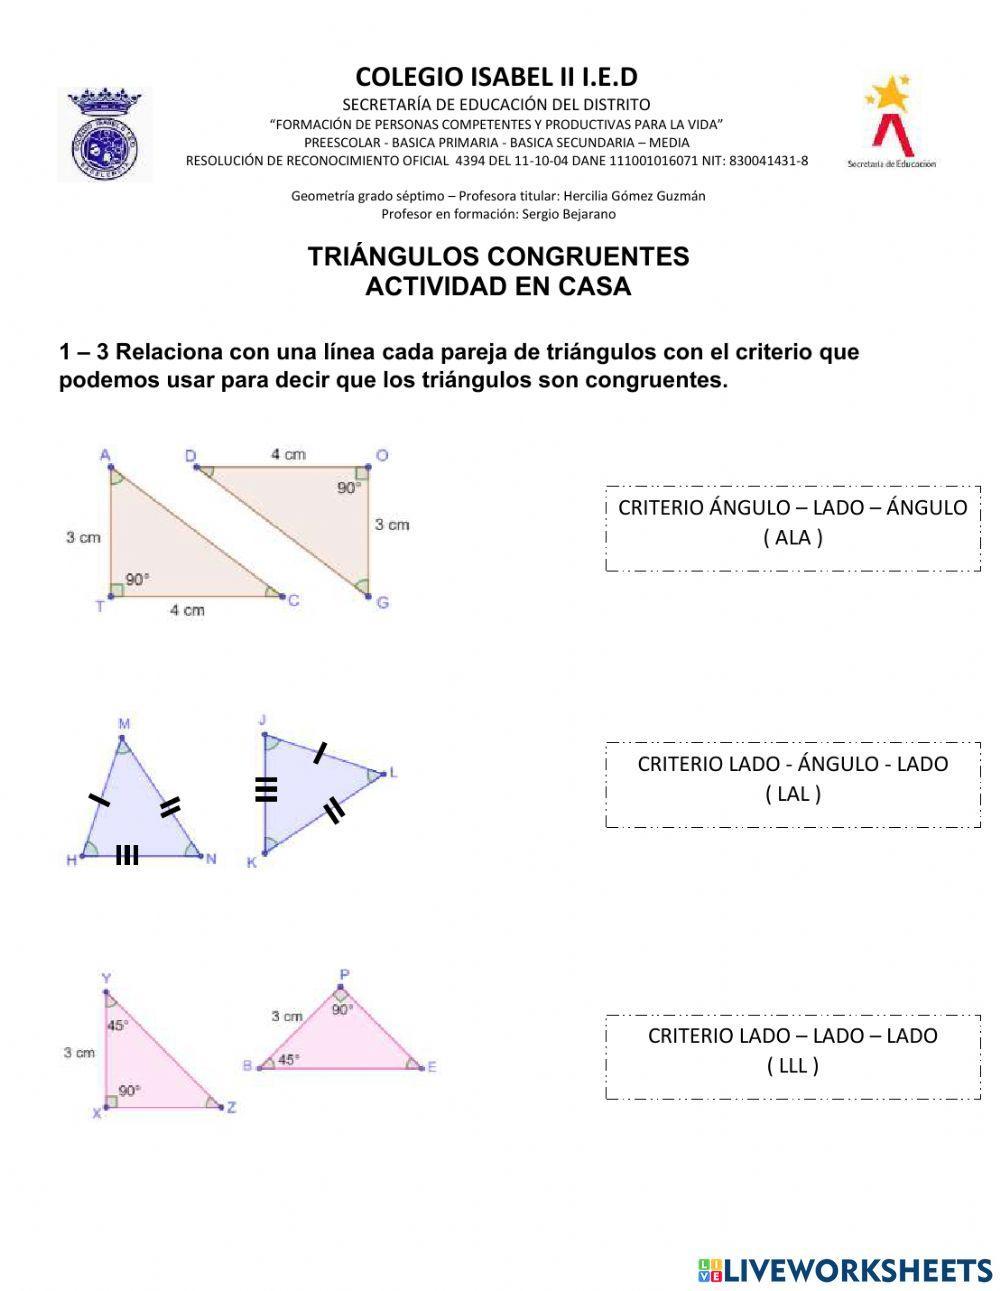 Criterios de Congruencia Triángulos 703